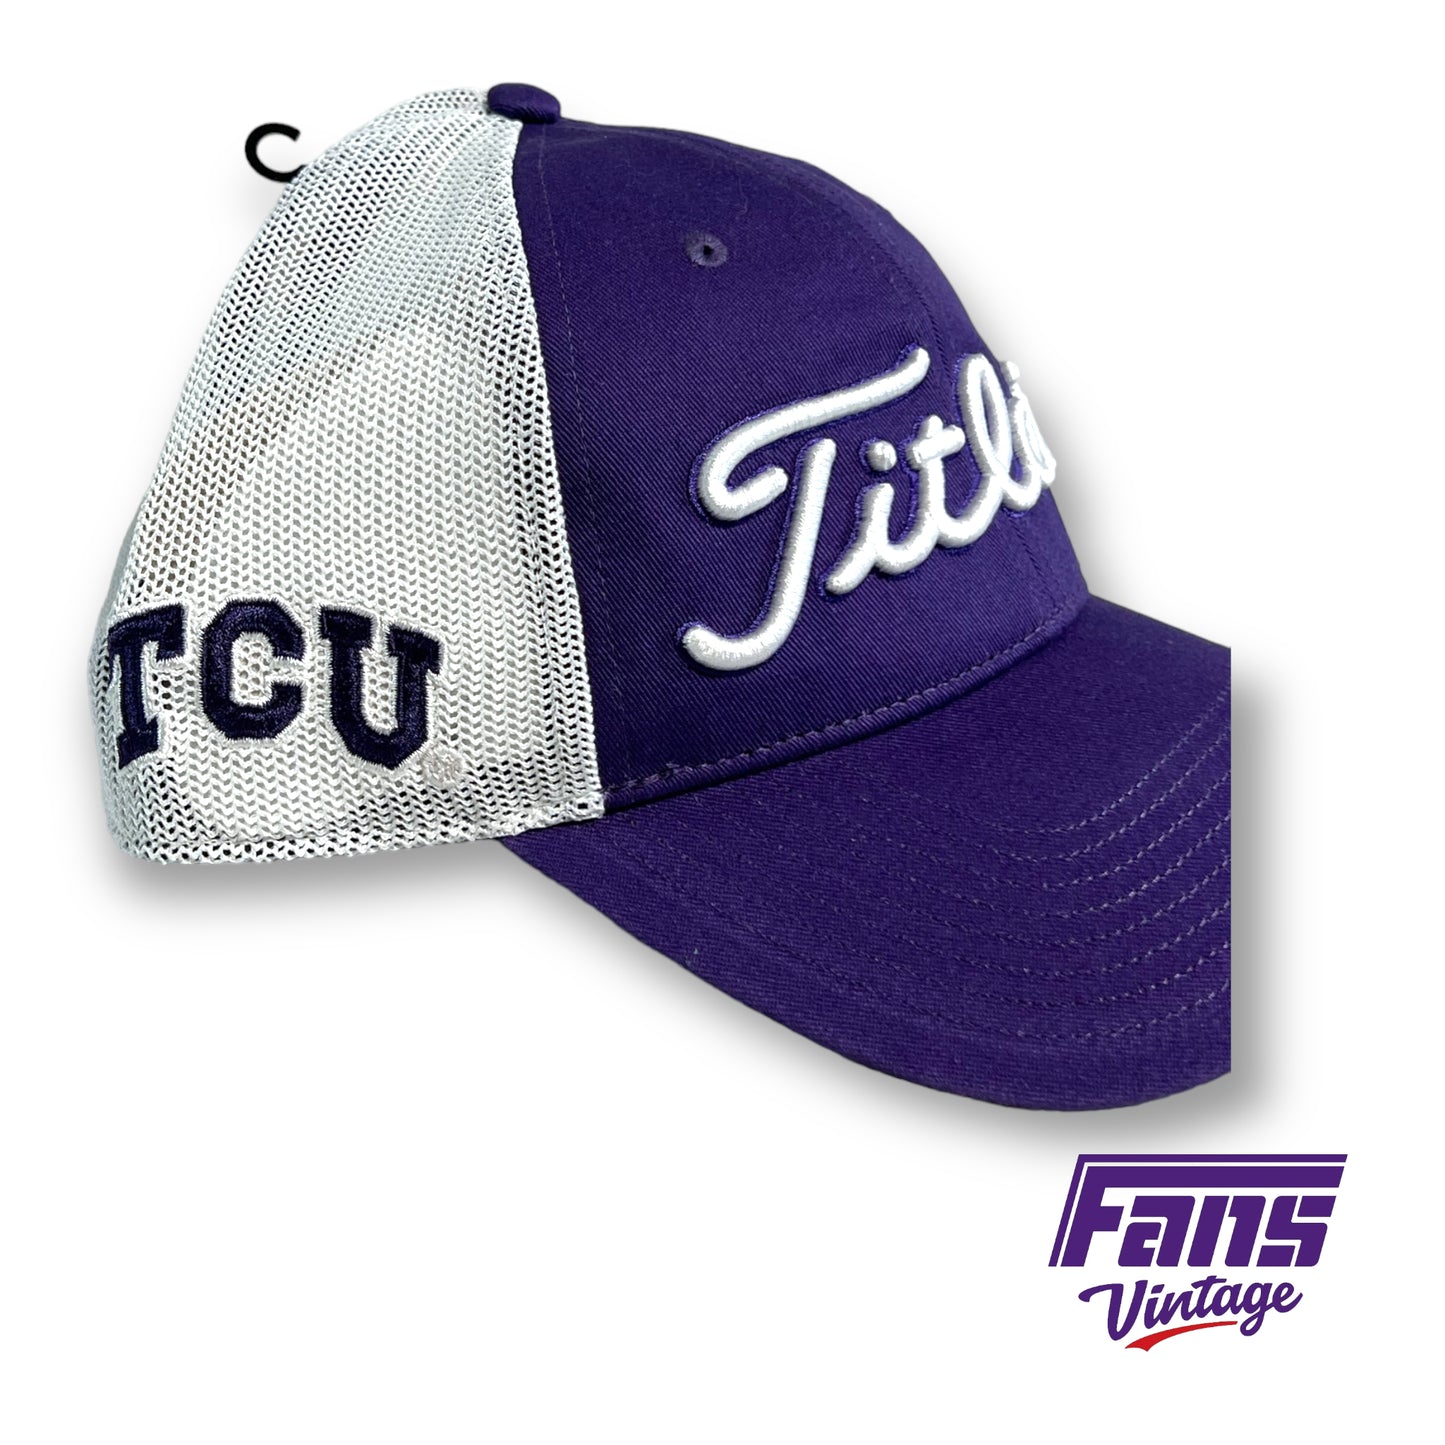 Titleist TCU Golf trucker hat